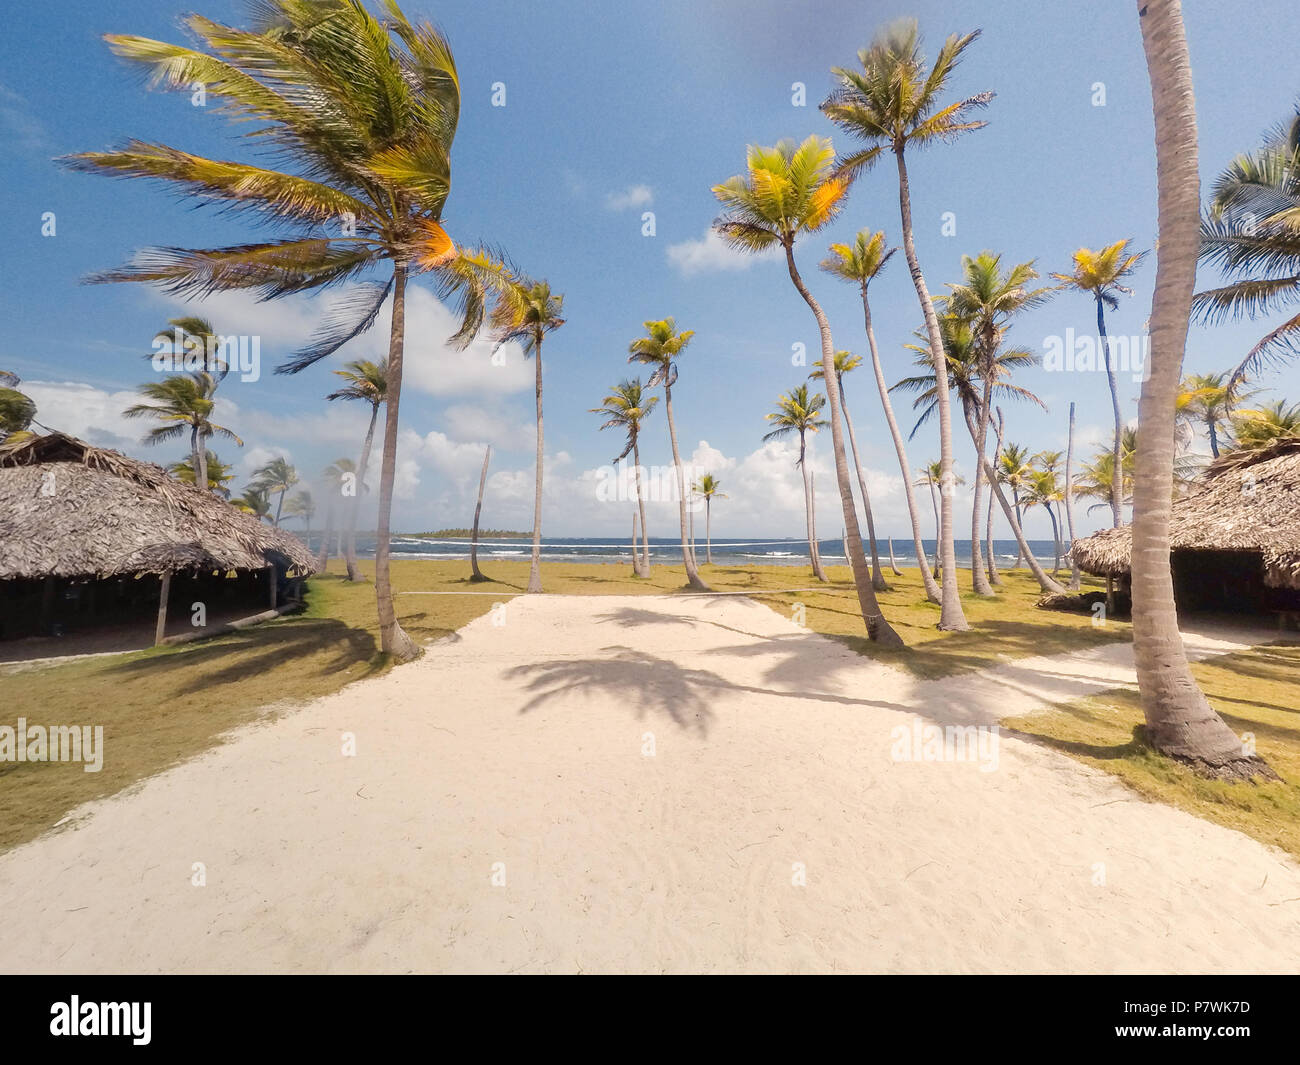 Huttes de chaume / bungalows sur la petite île tropicale avec palmiers Banque D'Images